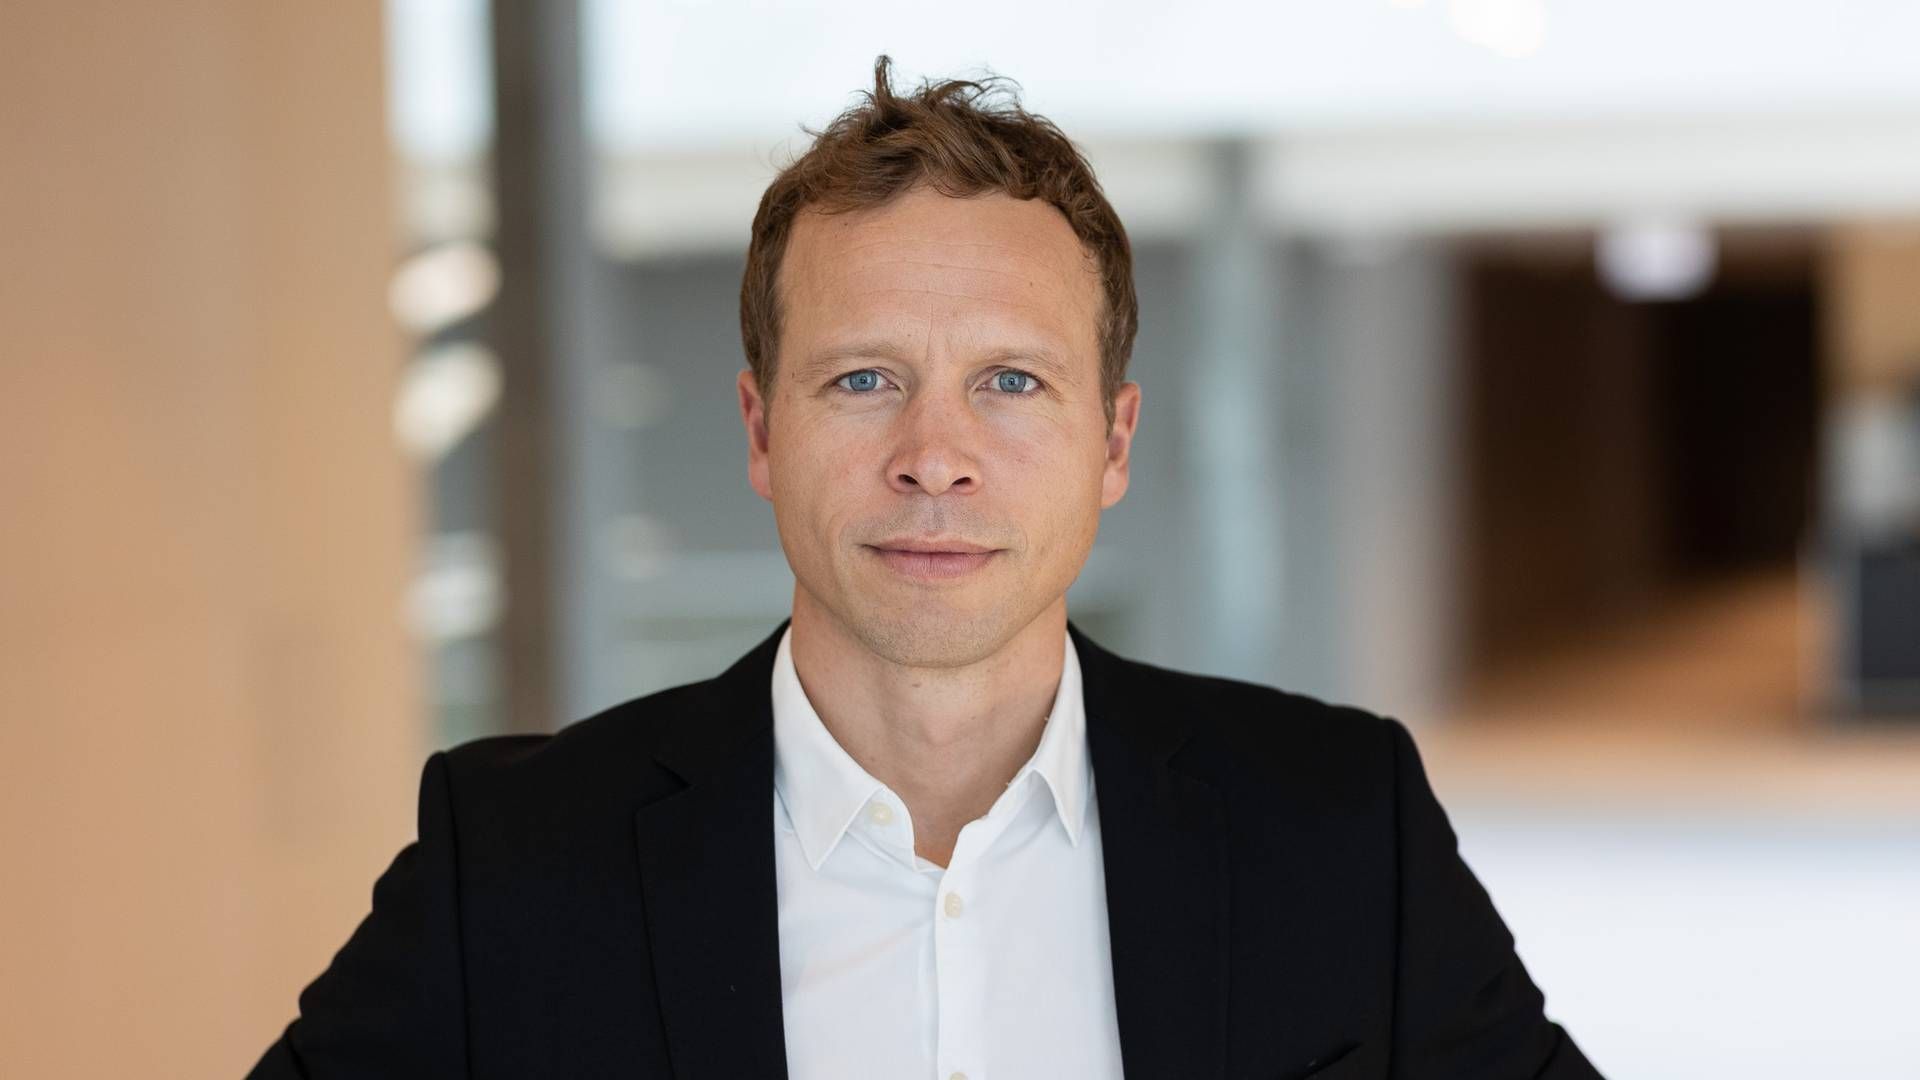 NY ORGANISASJON: Morten Tangnes skal lede Biogen Norden og Baltikum når selskapet går fra lokale organisasjoner til en regional klynge-organisasjon. | Foto: Biogen